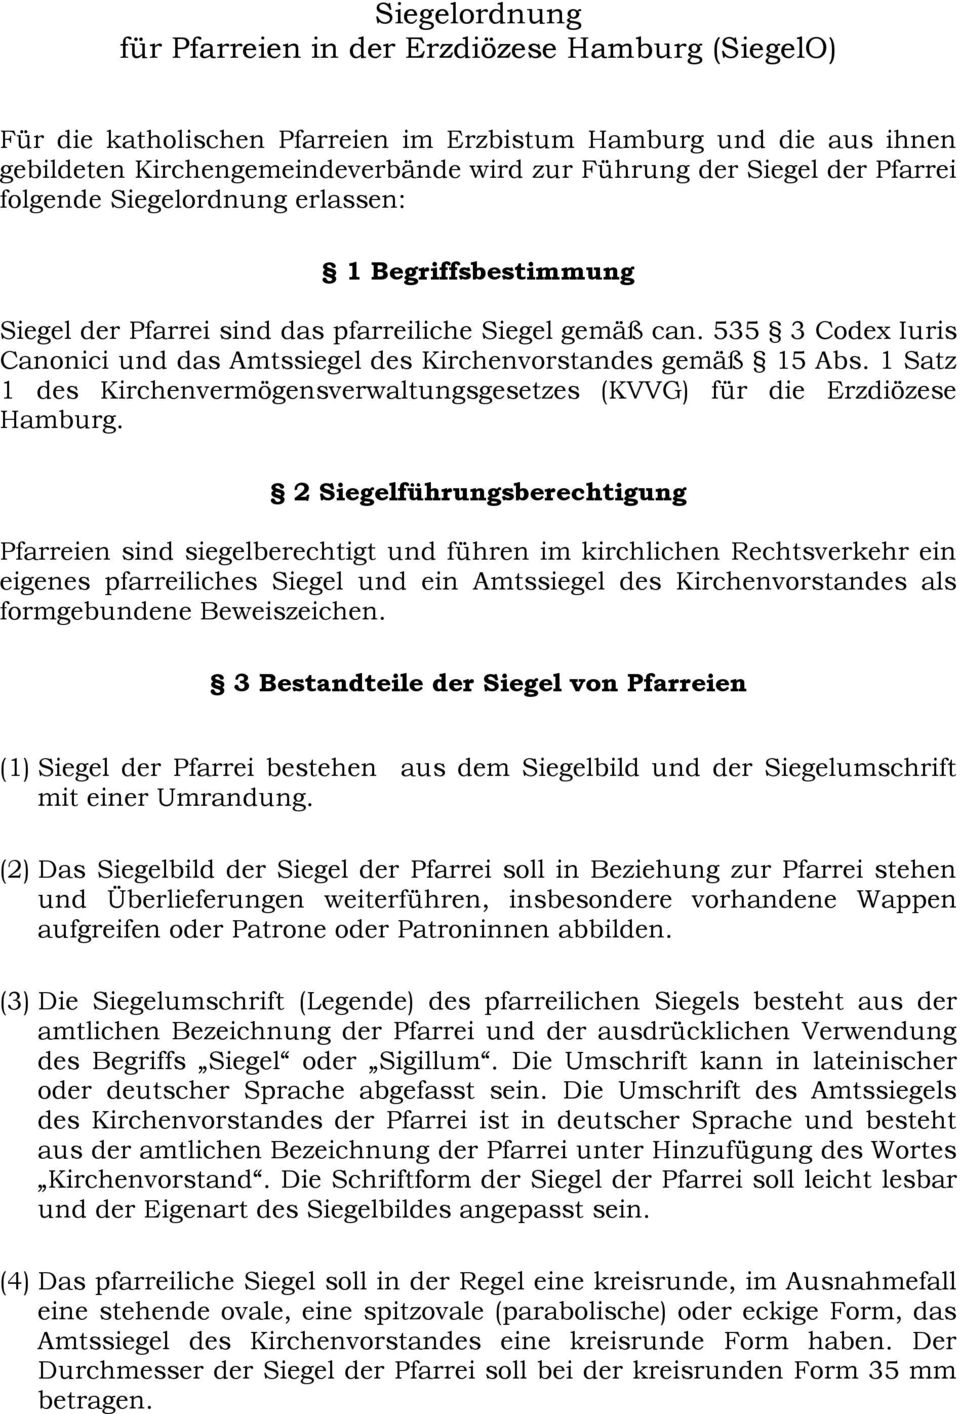 535 3 Codex Iuris Canonici und das Amtssiegel des Kirchenvorstandes gemäß 15 Abs. 1 Satz 1 des Kirchenvermögensverwaltungsgesetzes (KVVG) für die Erzdiözese Hamburg.